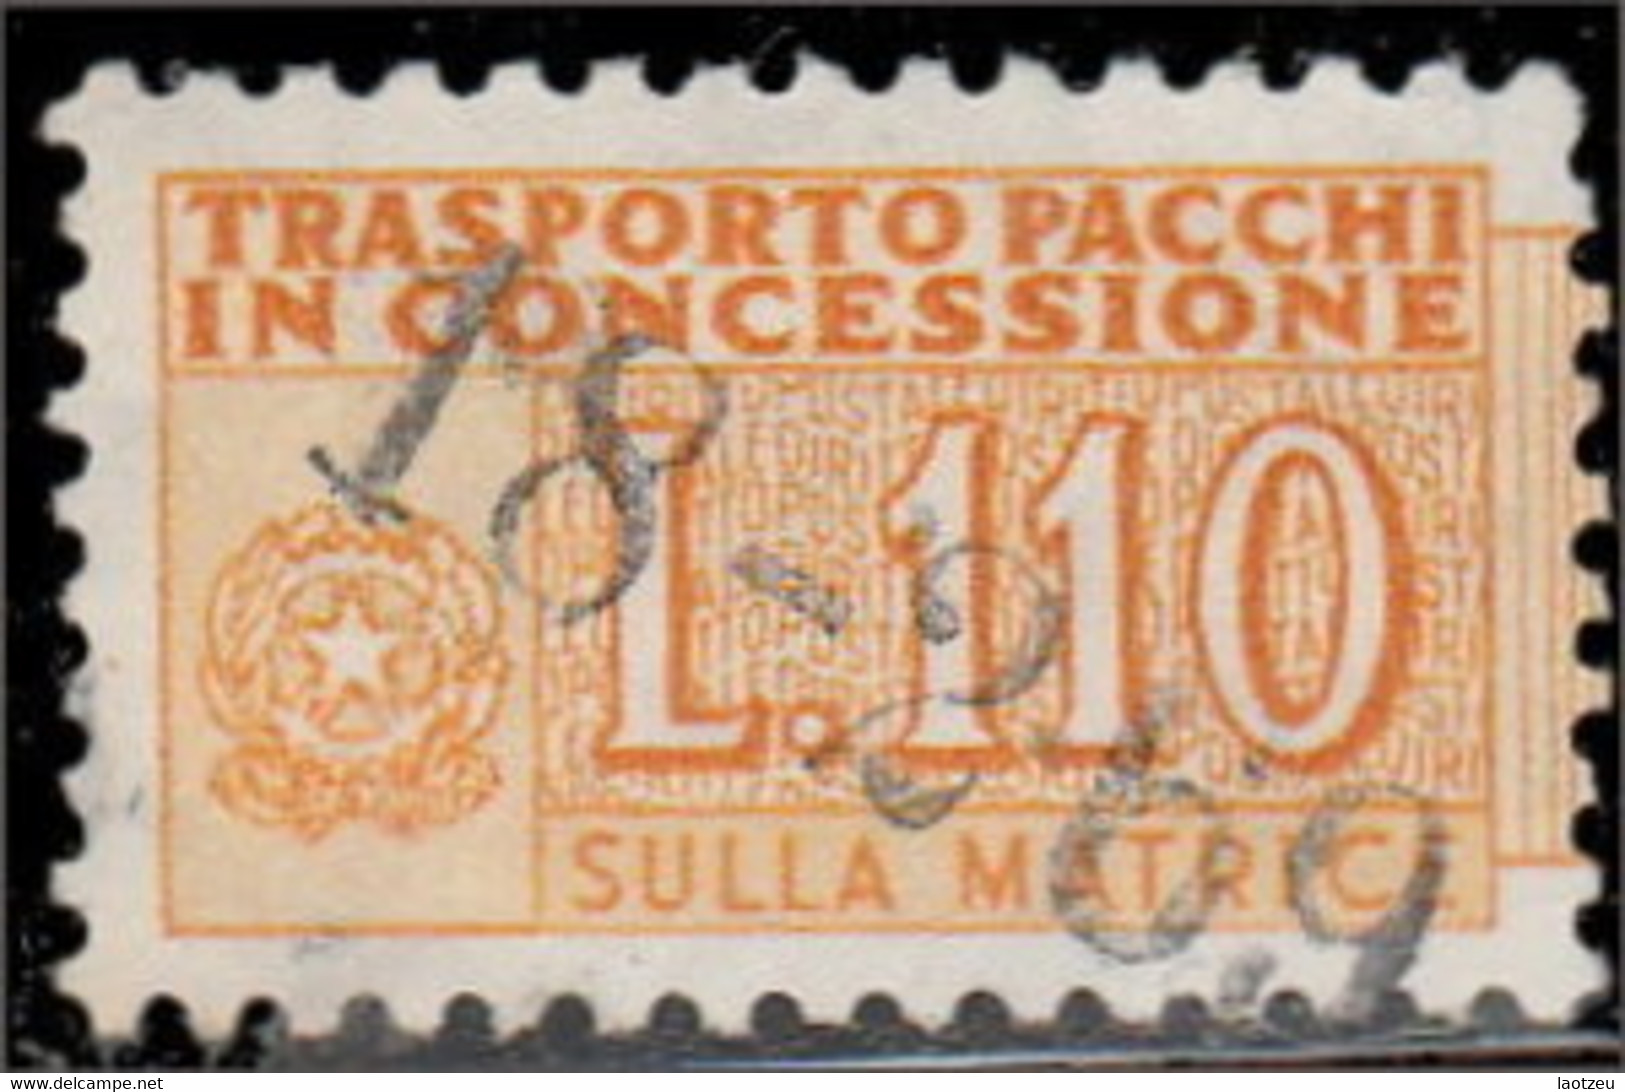 Italie Colis Postaux 1956. ~ CP 98  - 110 L. Chiffre - Postpaketten